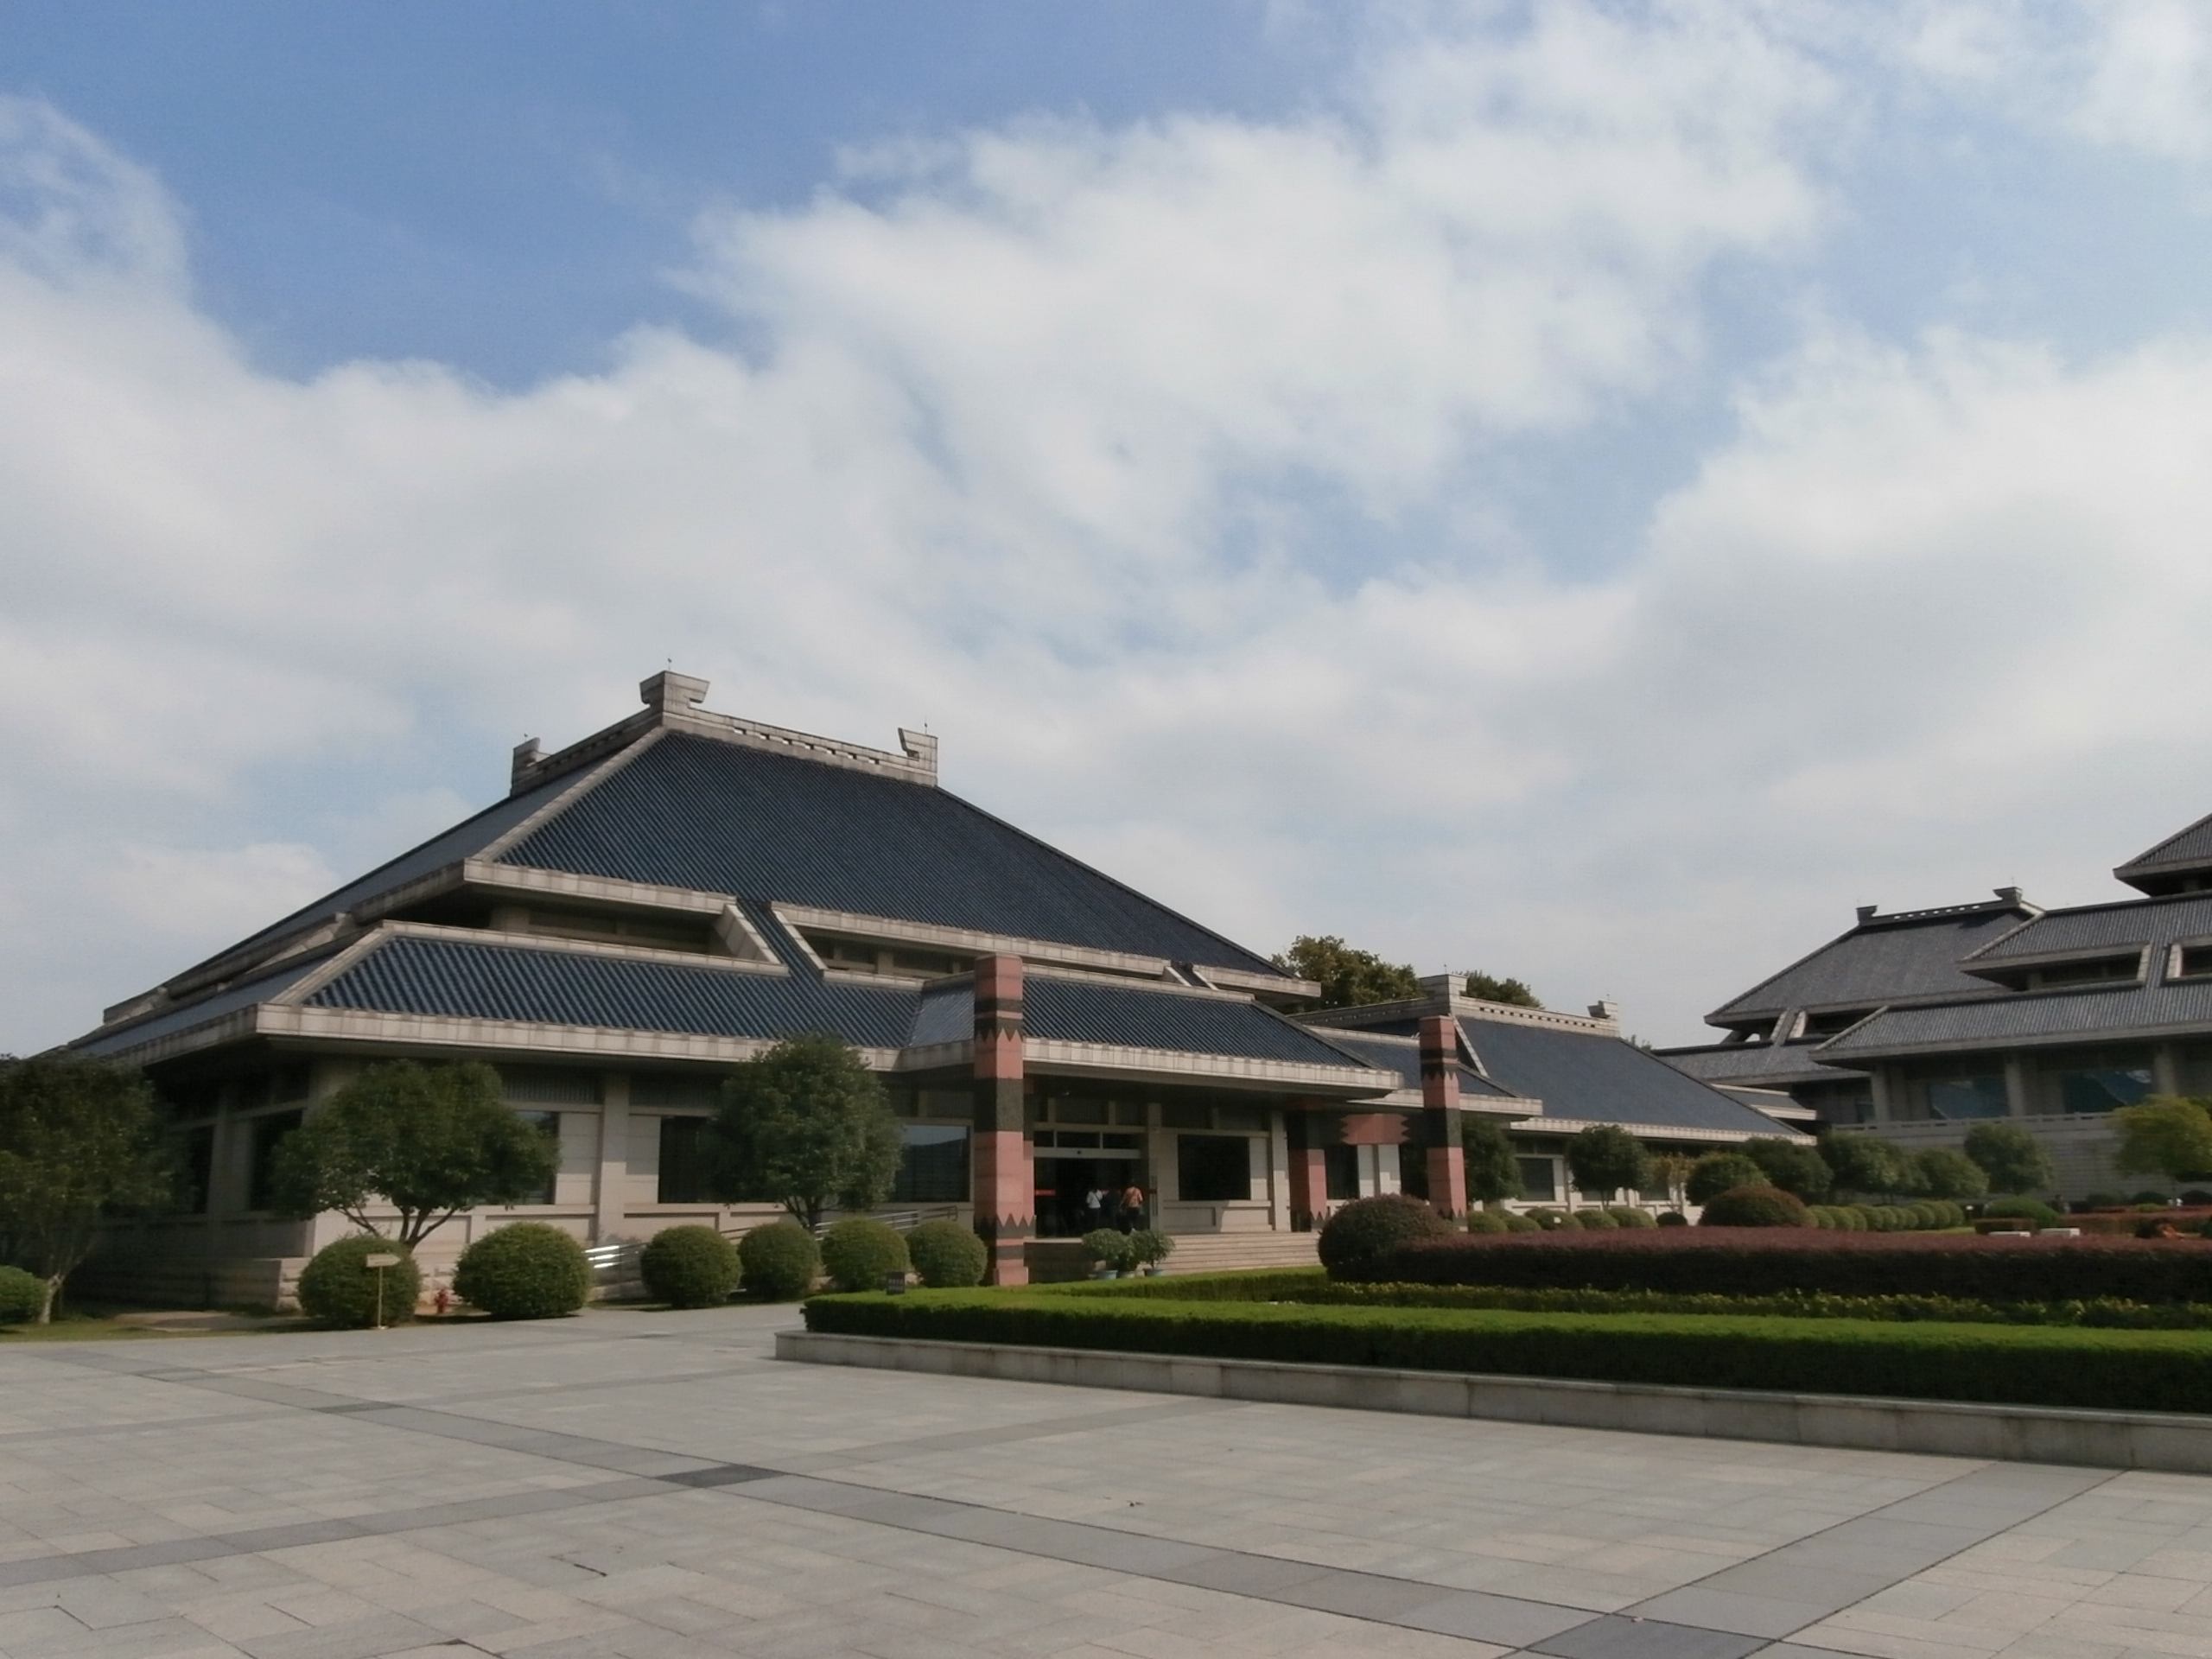 湖北省博物馆